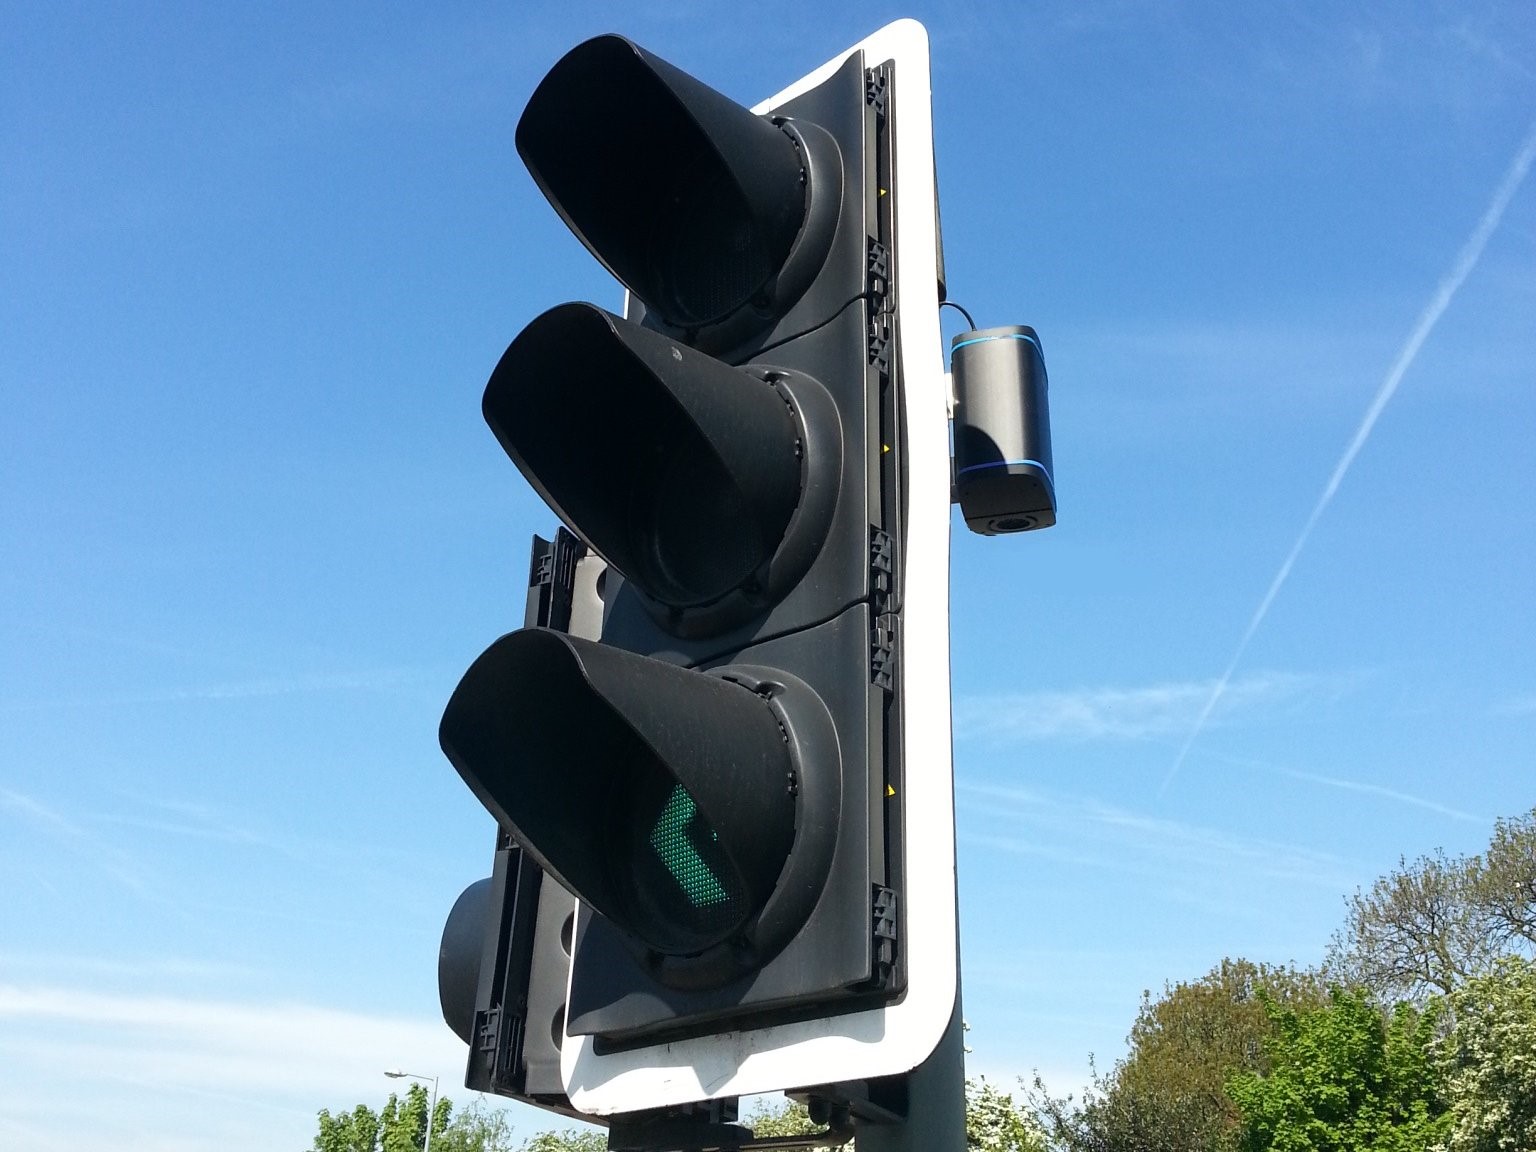 a Zephyr monitor on a traffic signal; credit: EarthSense.